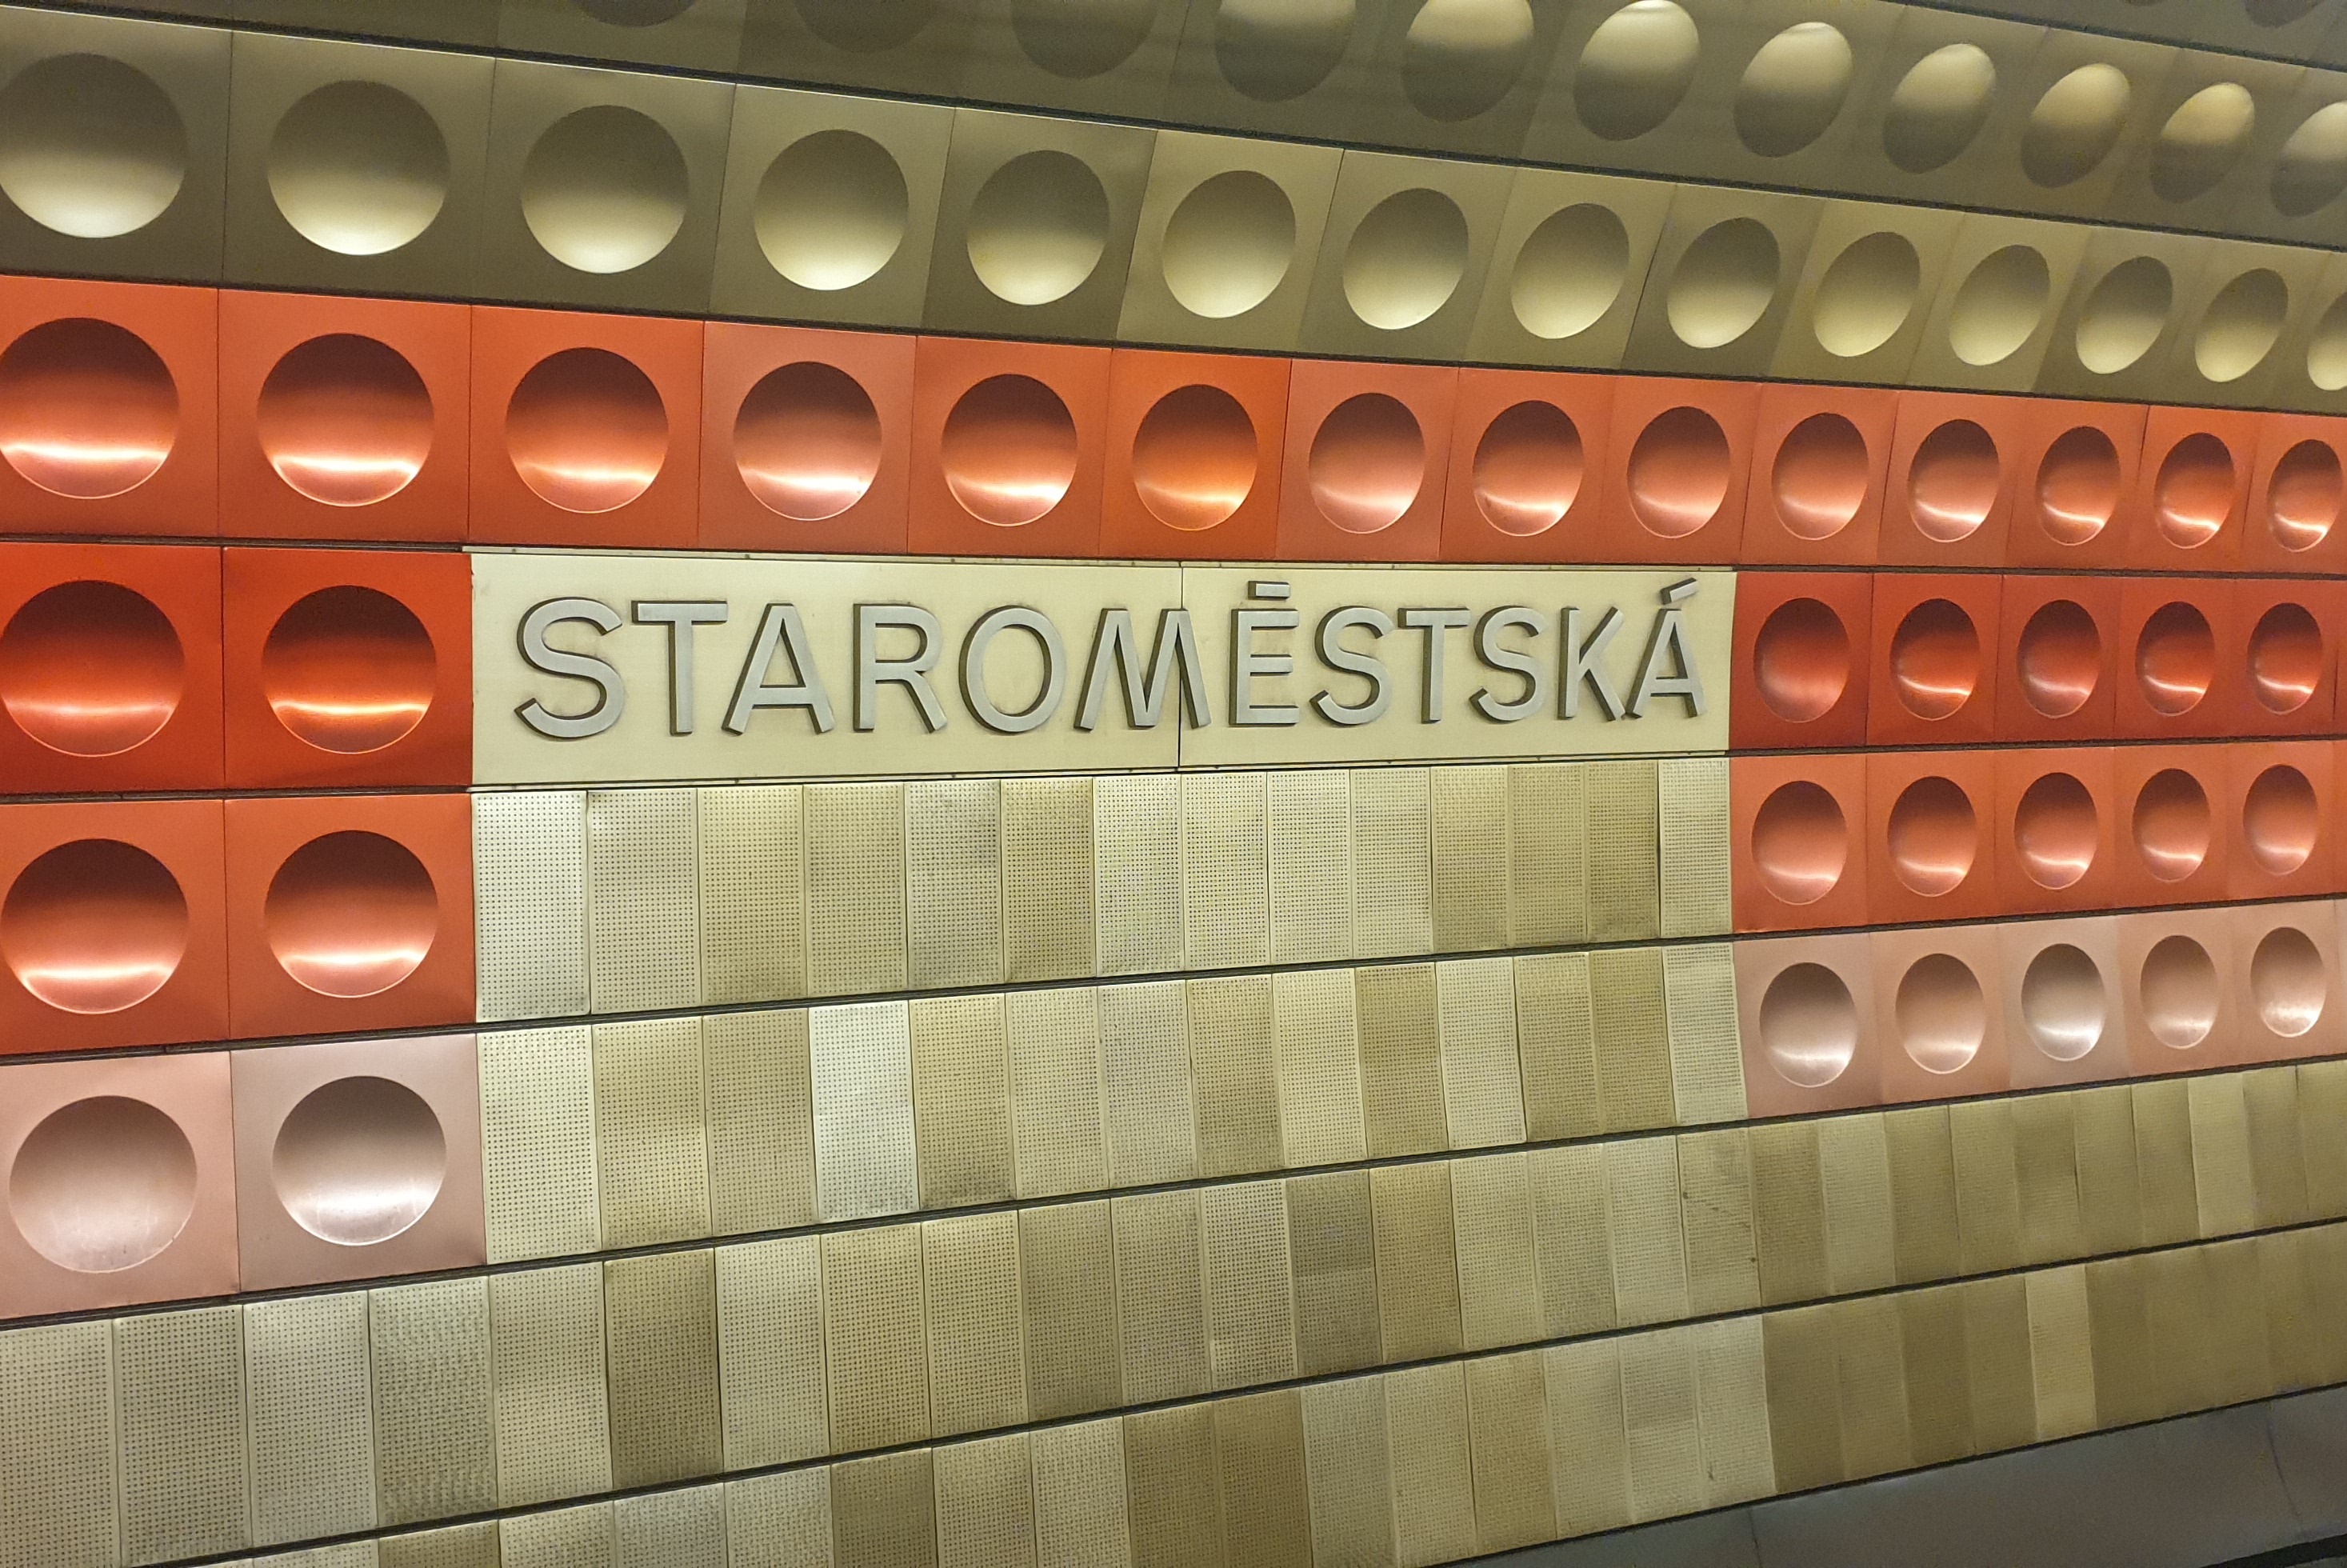 Esta es la imagen de una estacion de metro en Praga